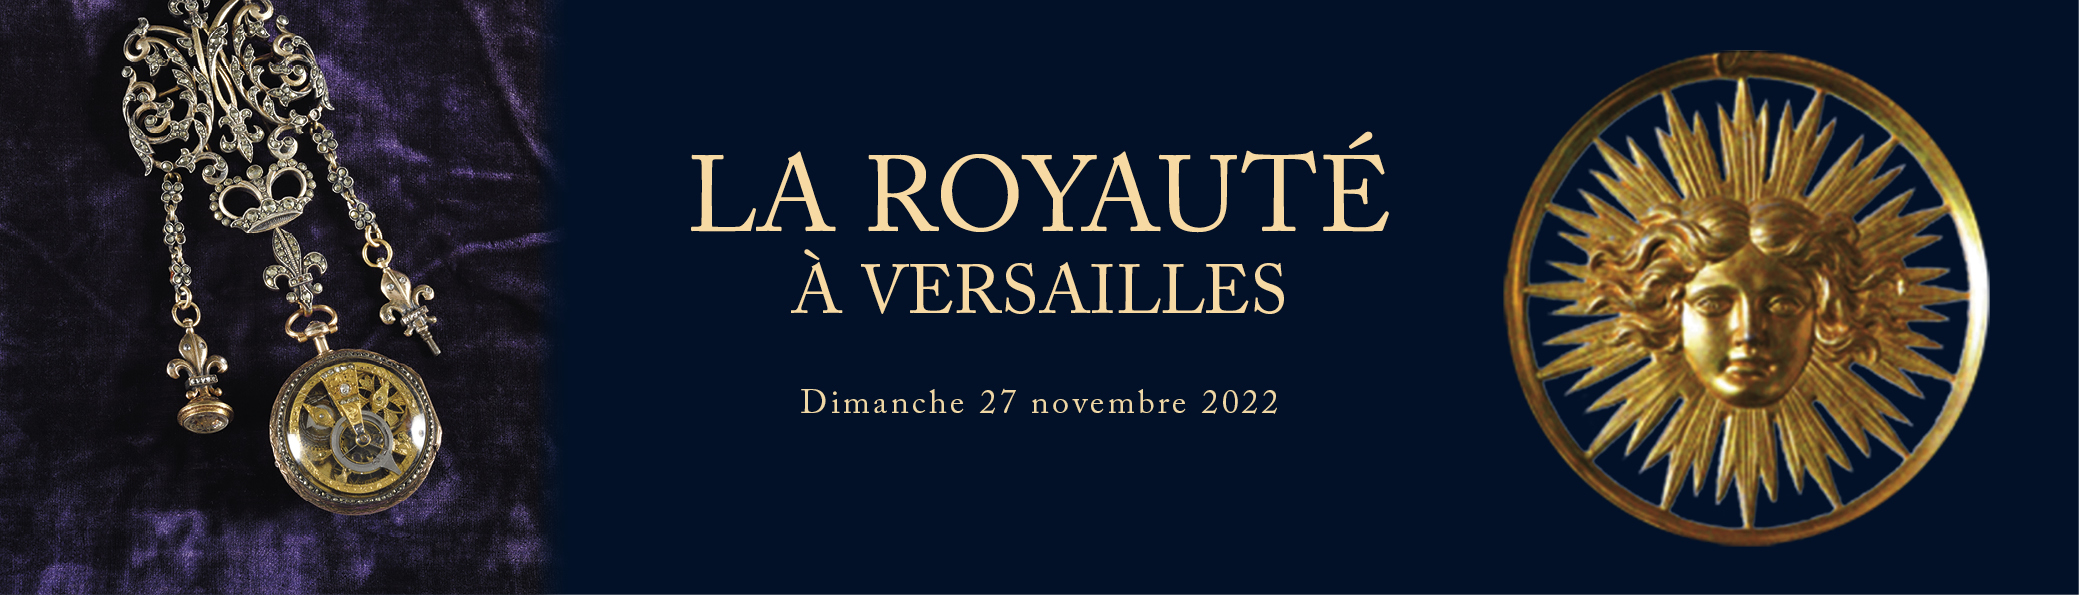 La Royauté à Versailles